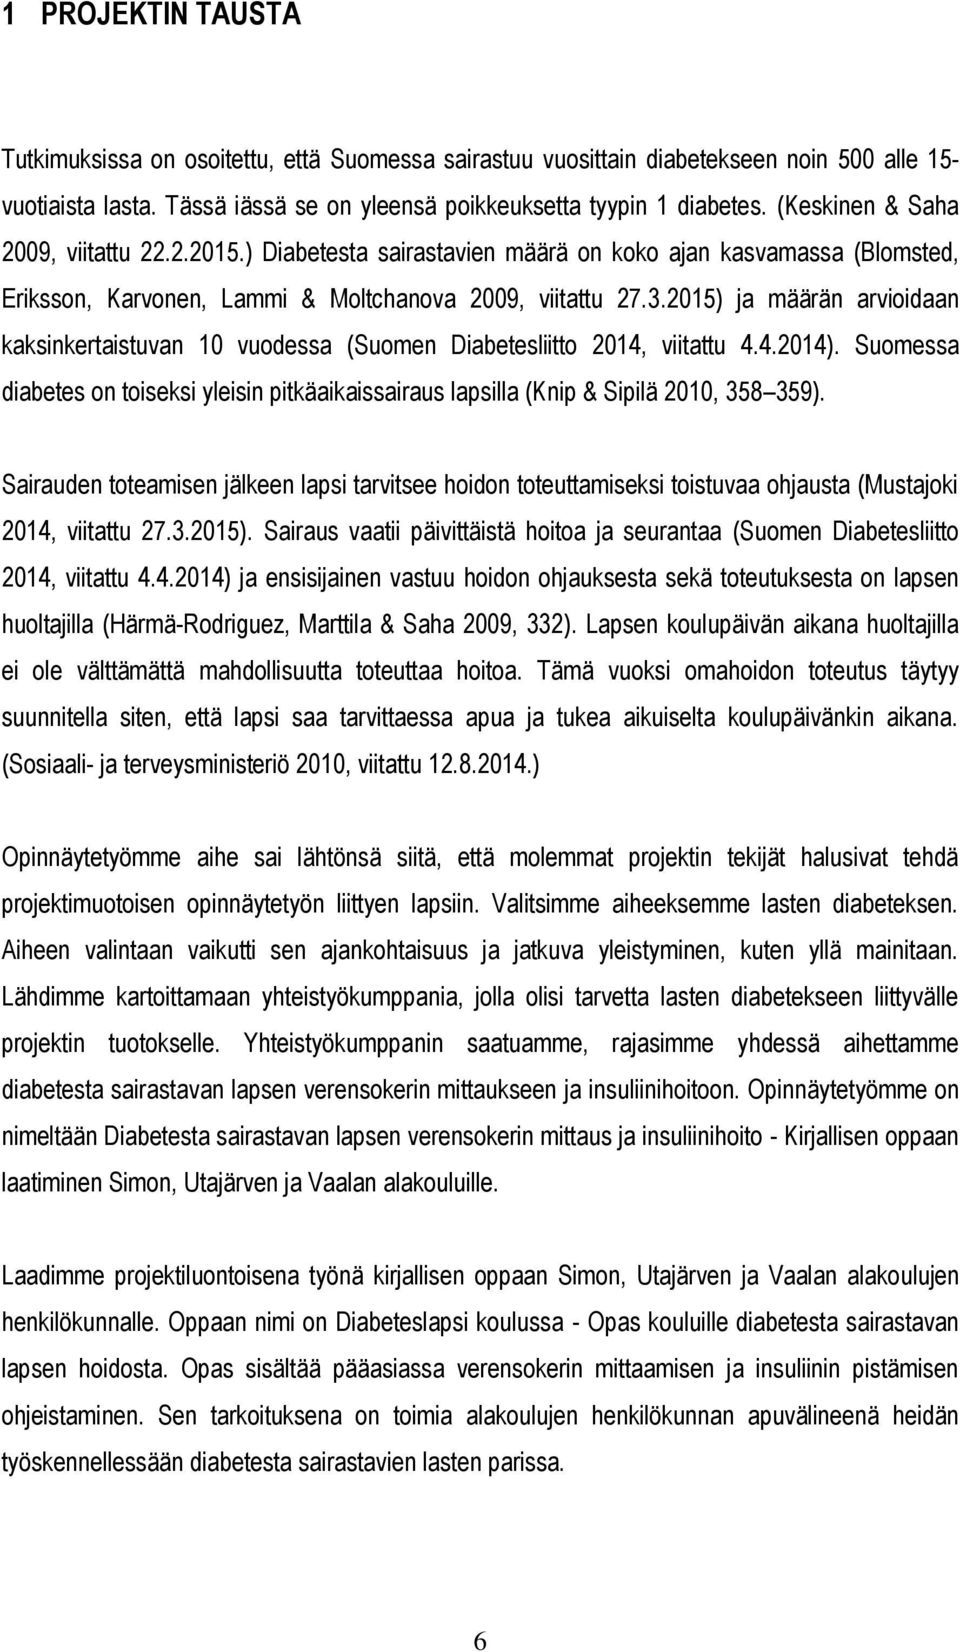 2015) ja määrän arvioidaan kaksinkertaistuvan 10 vuodessa (Suomen Diabetesliitto 2014, viitattu 4.4.2014).